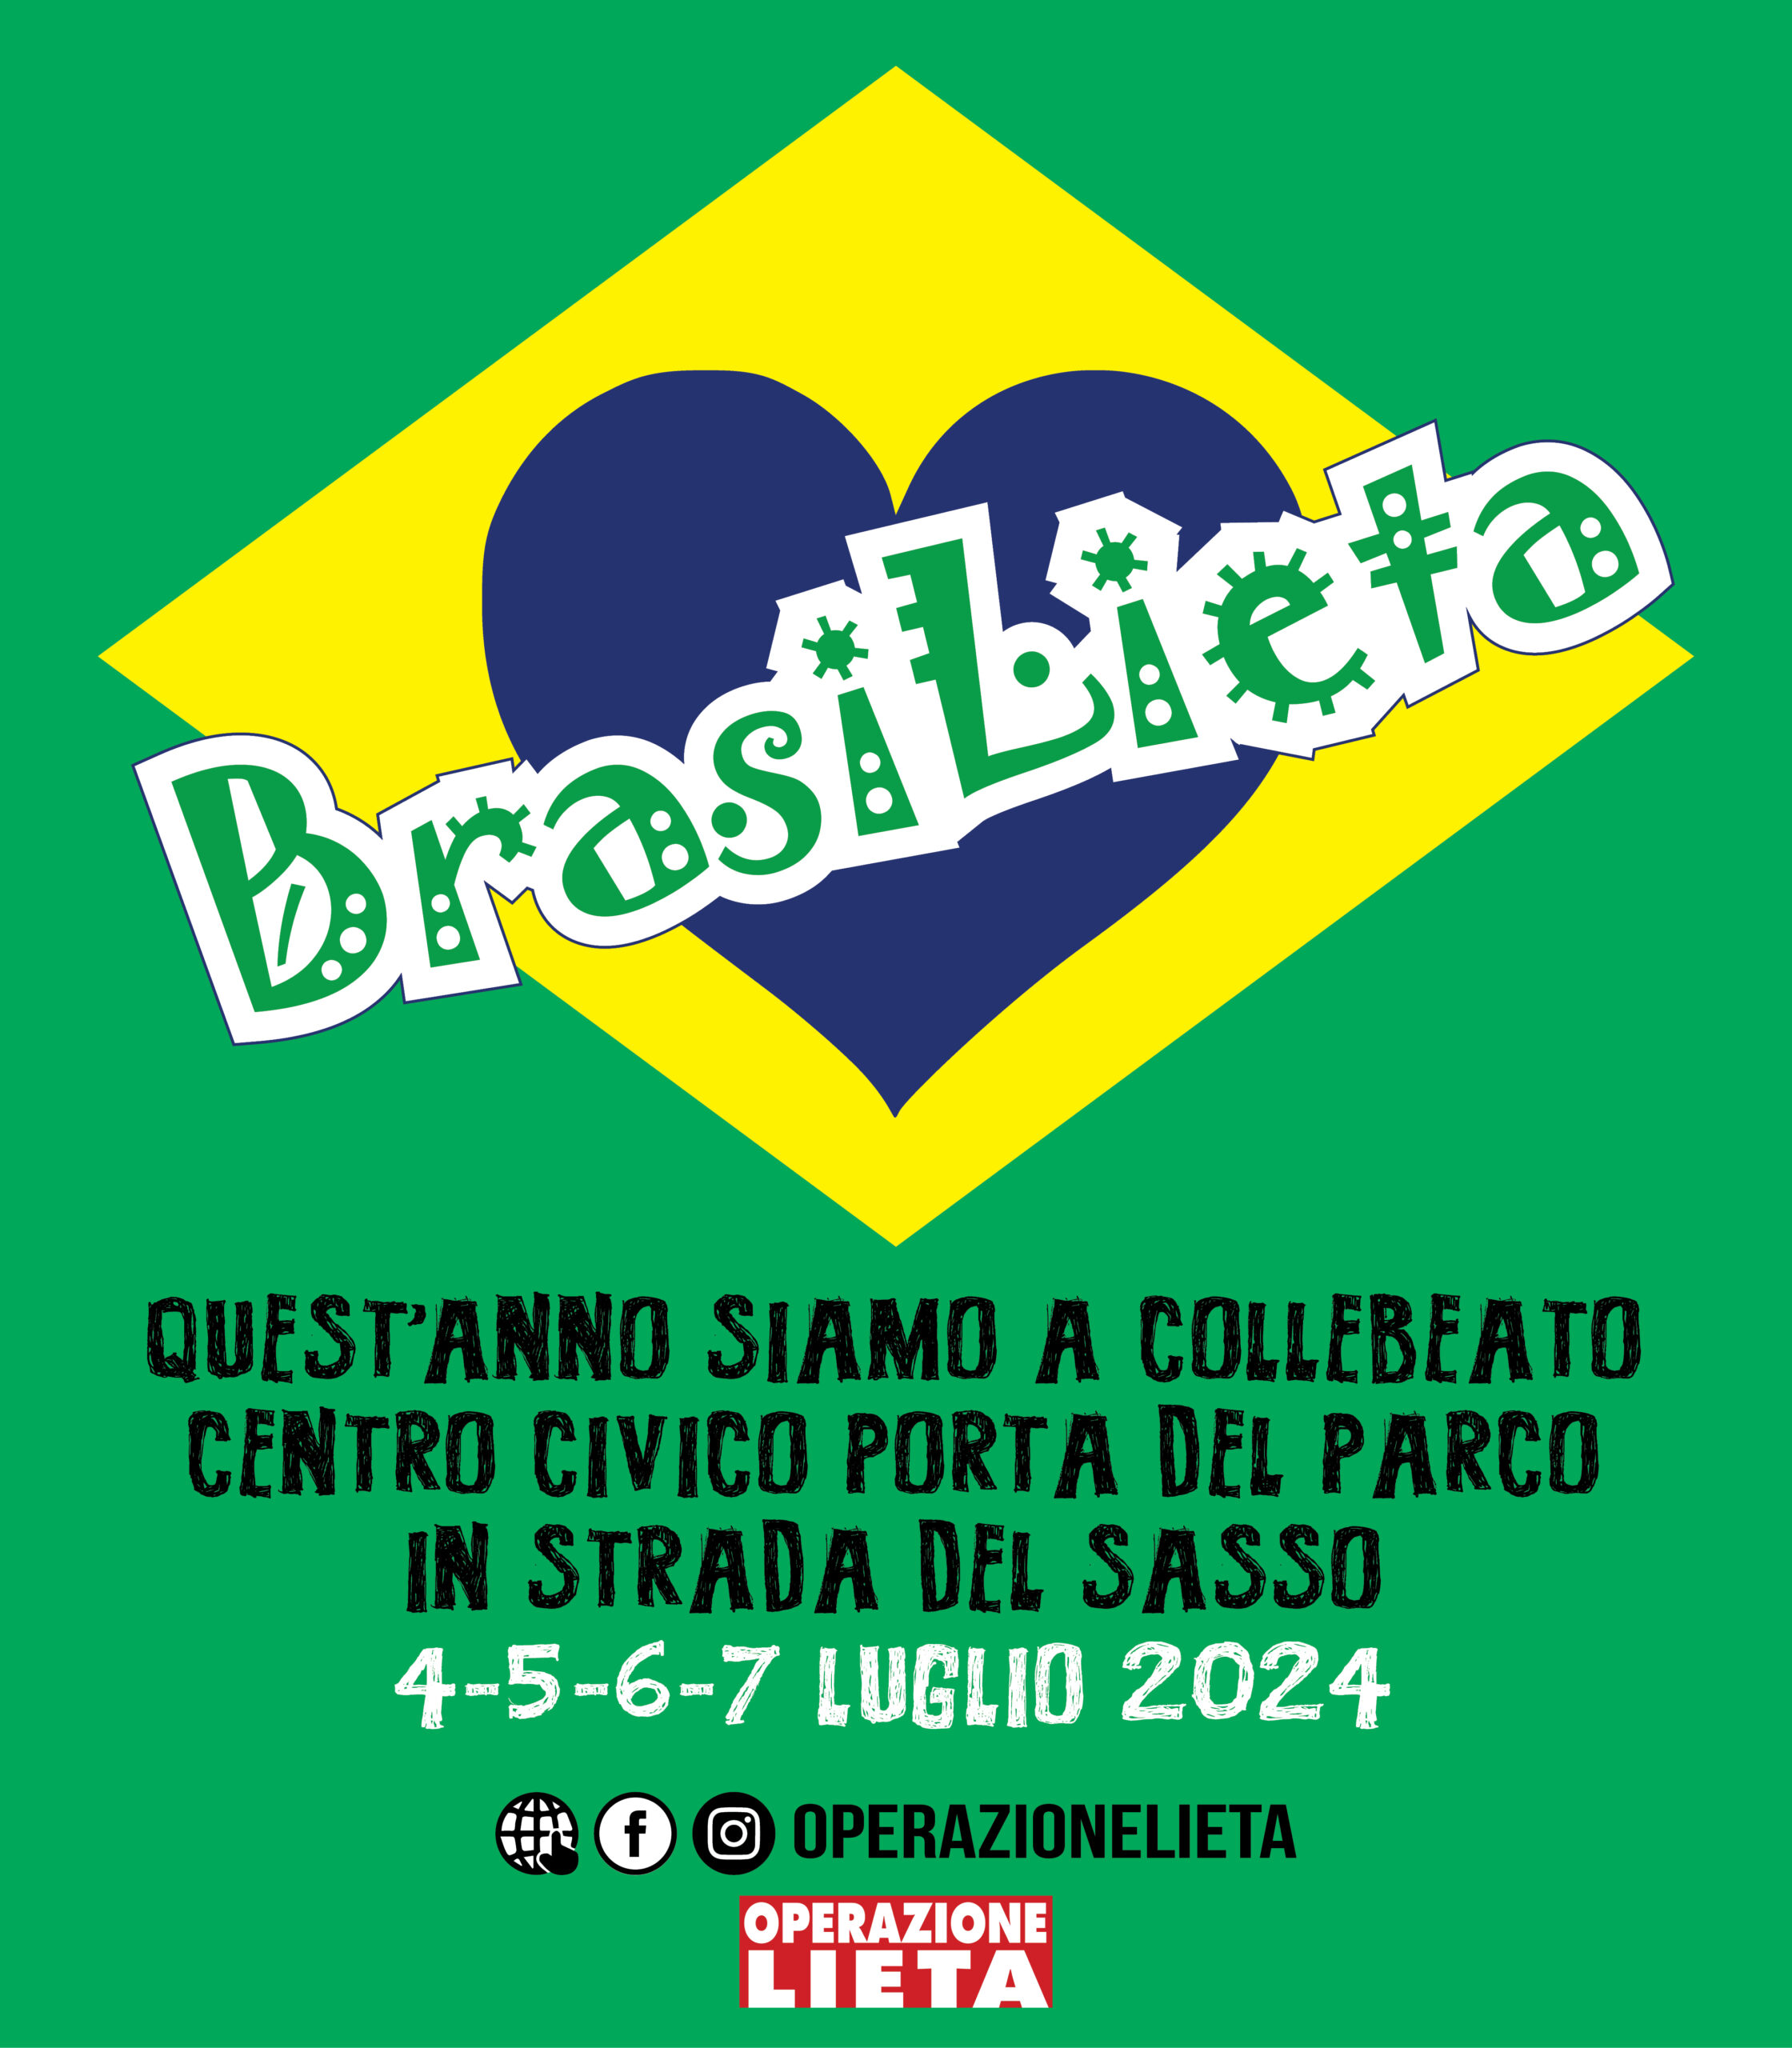 BRASILIETA 2024